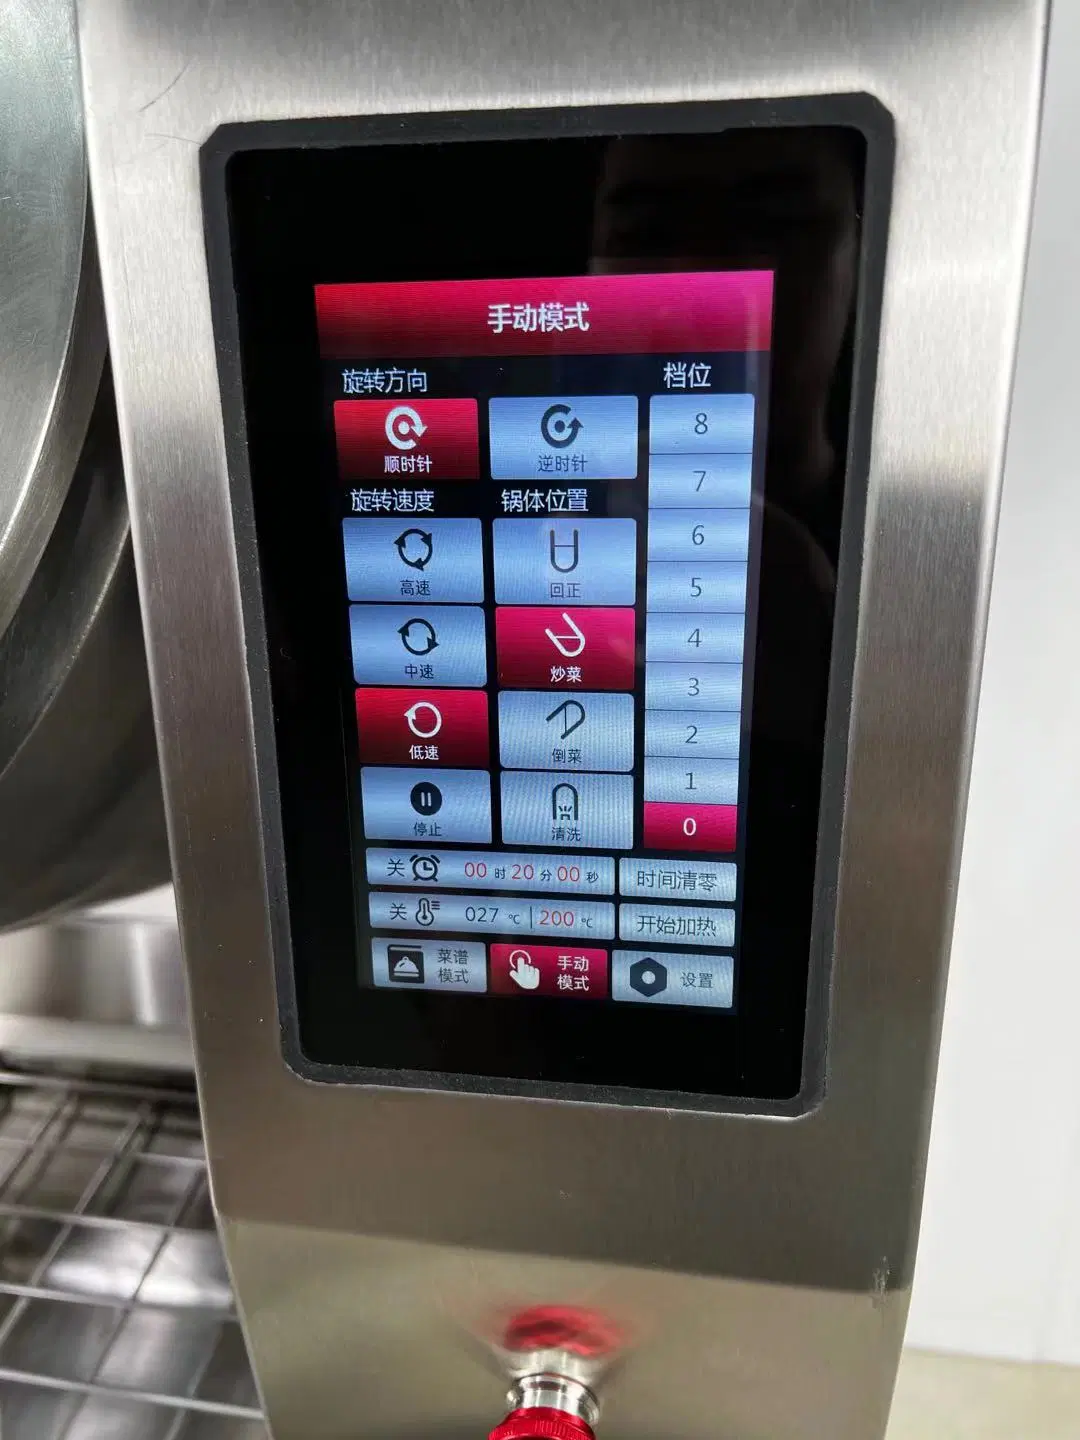 Sauté de automatique intelligent Wok Cooker Robot avec fonction de stockage de menu du restaurant